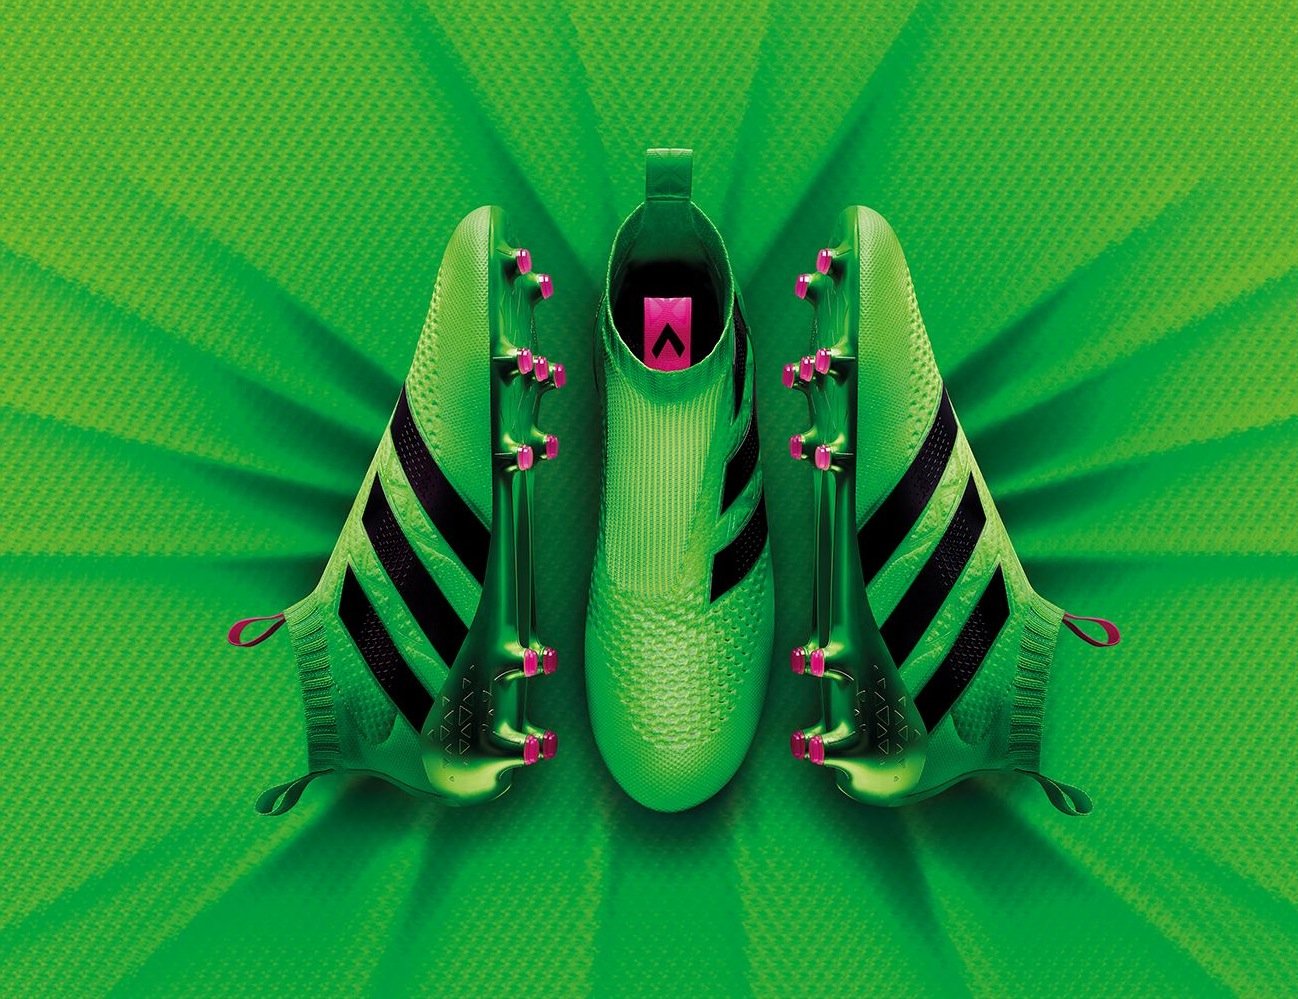 Giftgrün, leicht – und ohne Schnürsenkel: der neue Fußballschuh ACE 16+ Purecontrol von Adidas.